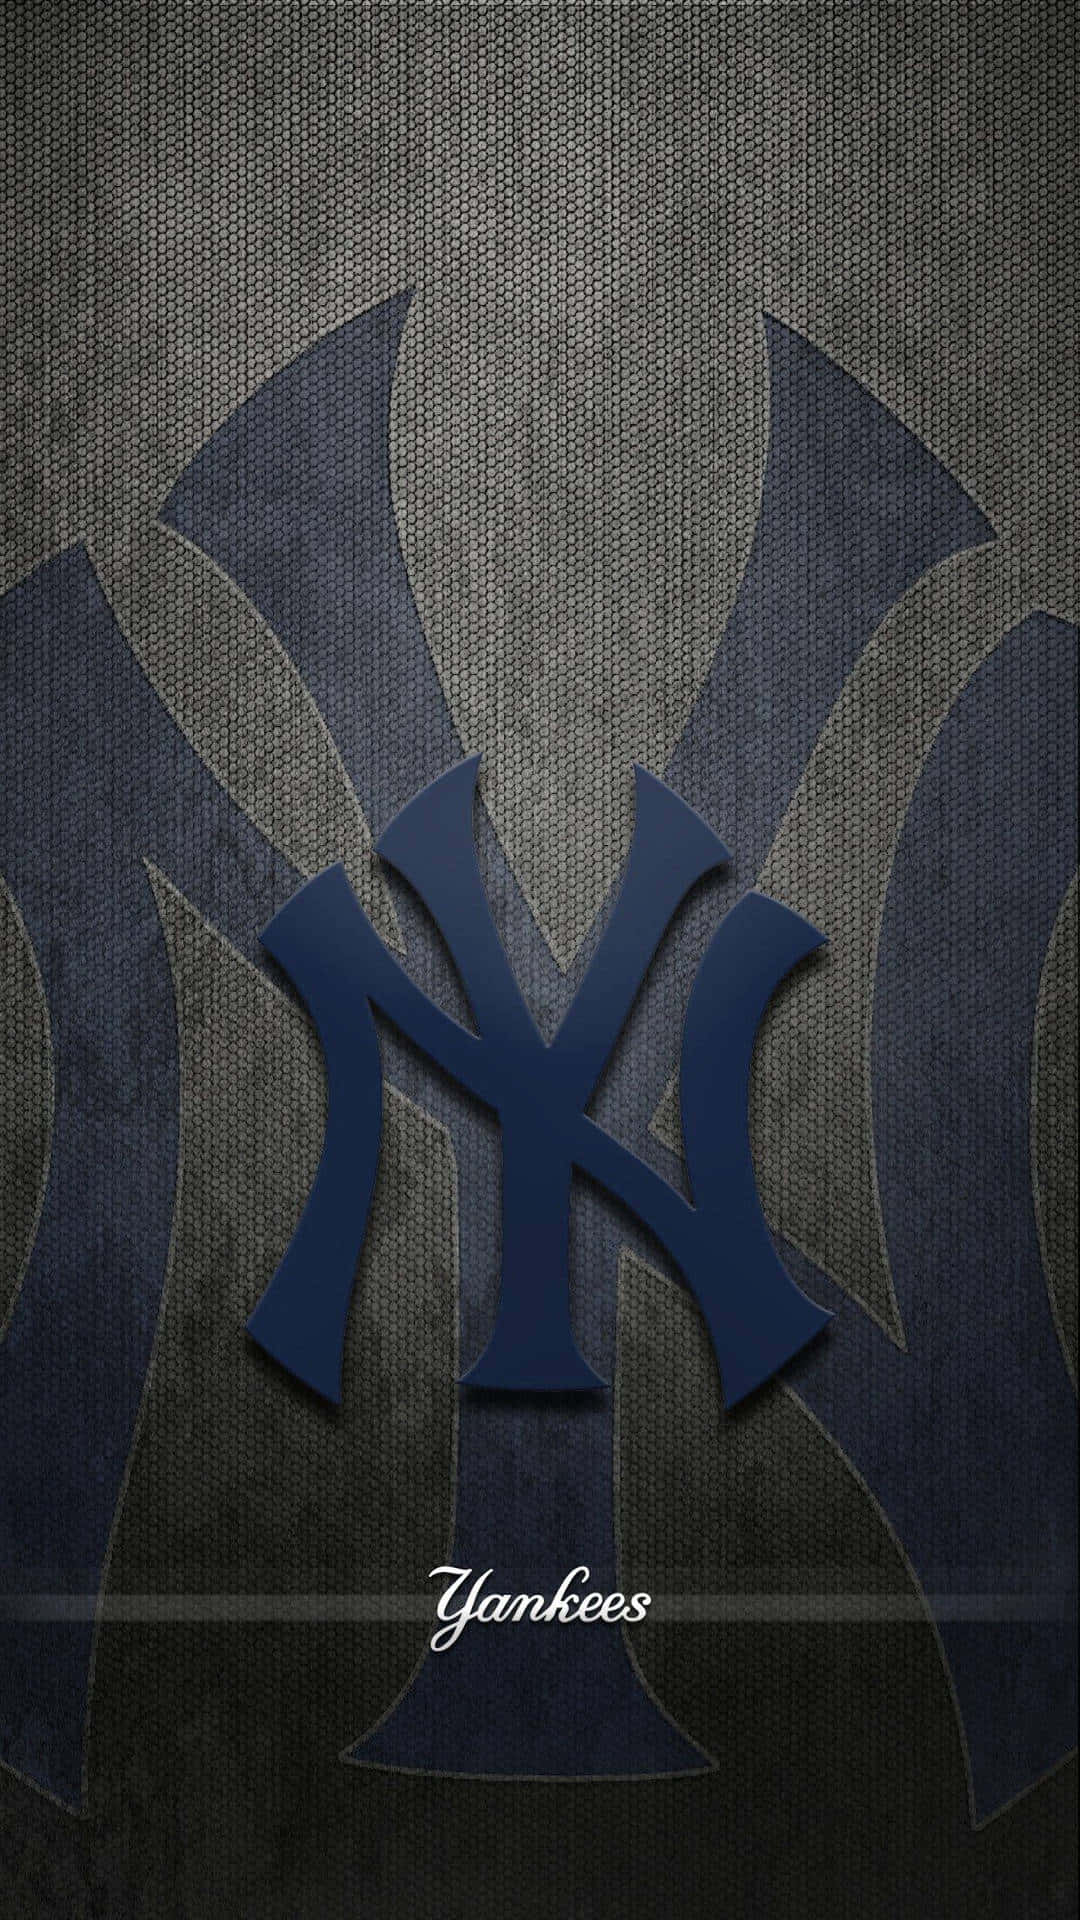 Newyork Yankees Heimspiel Wallpaper